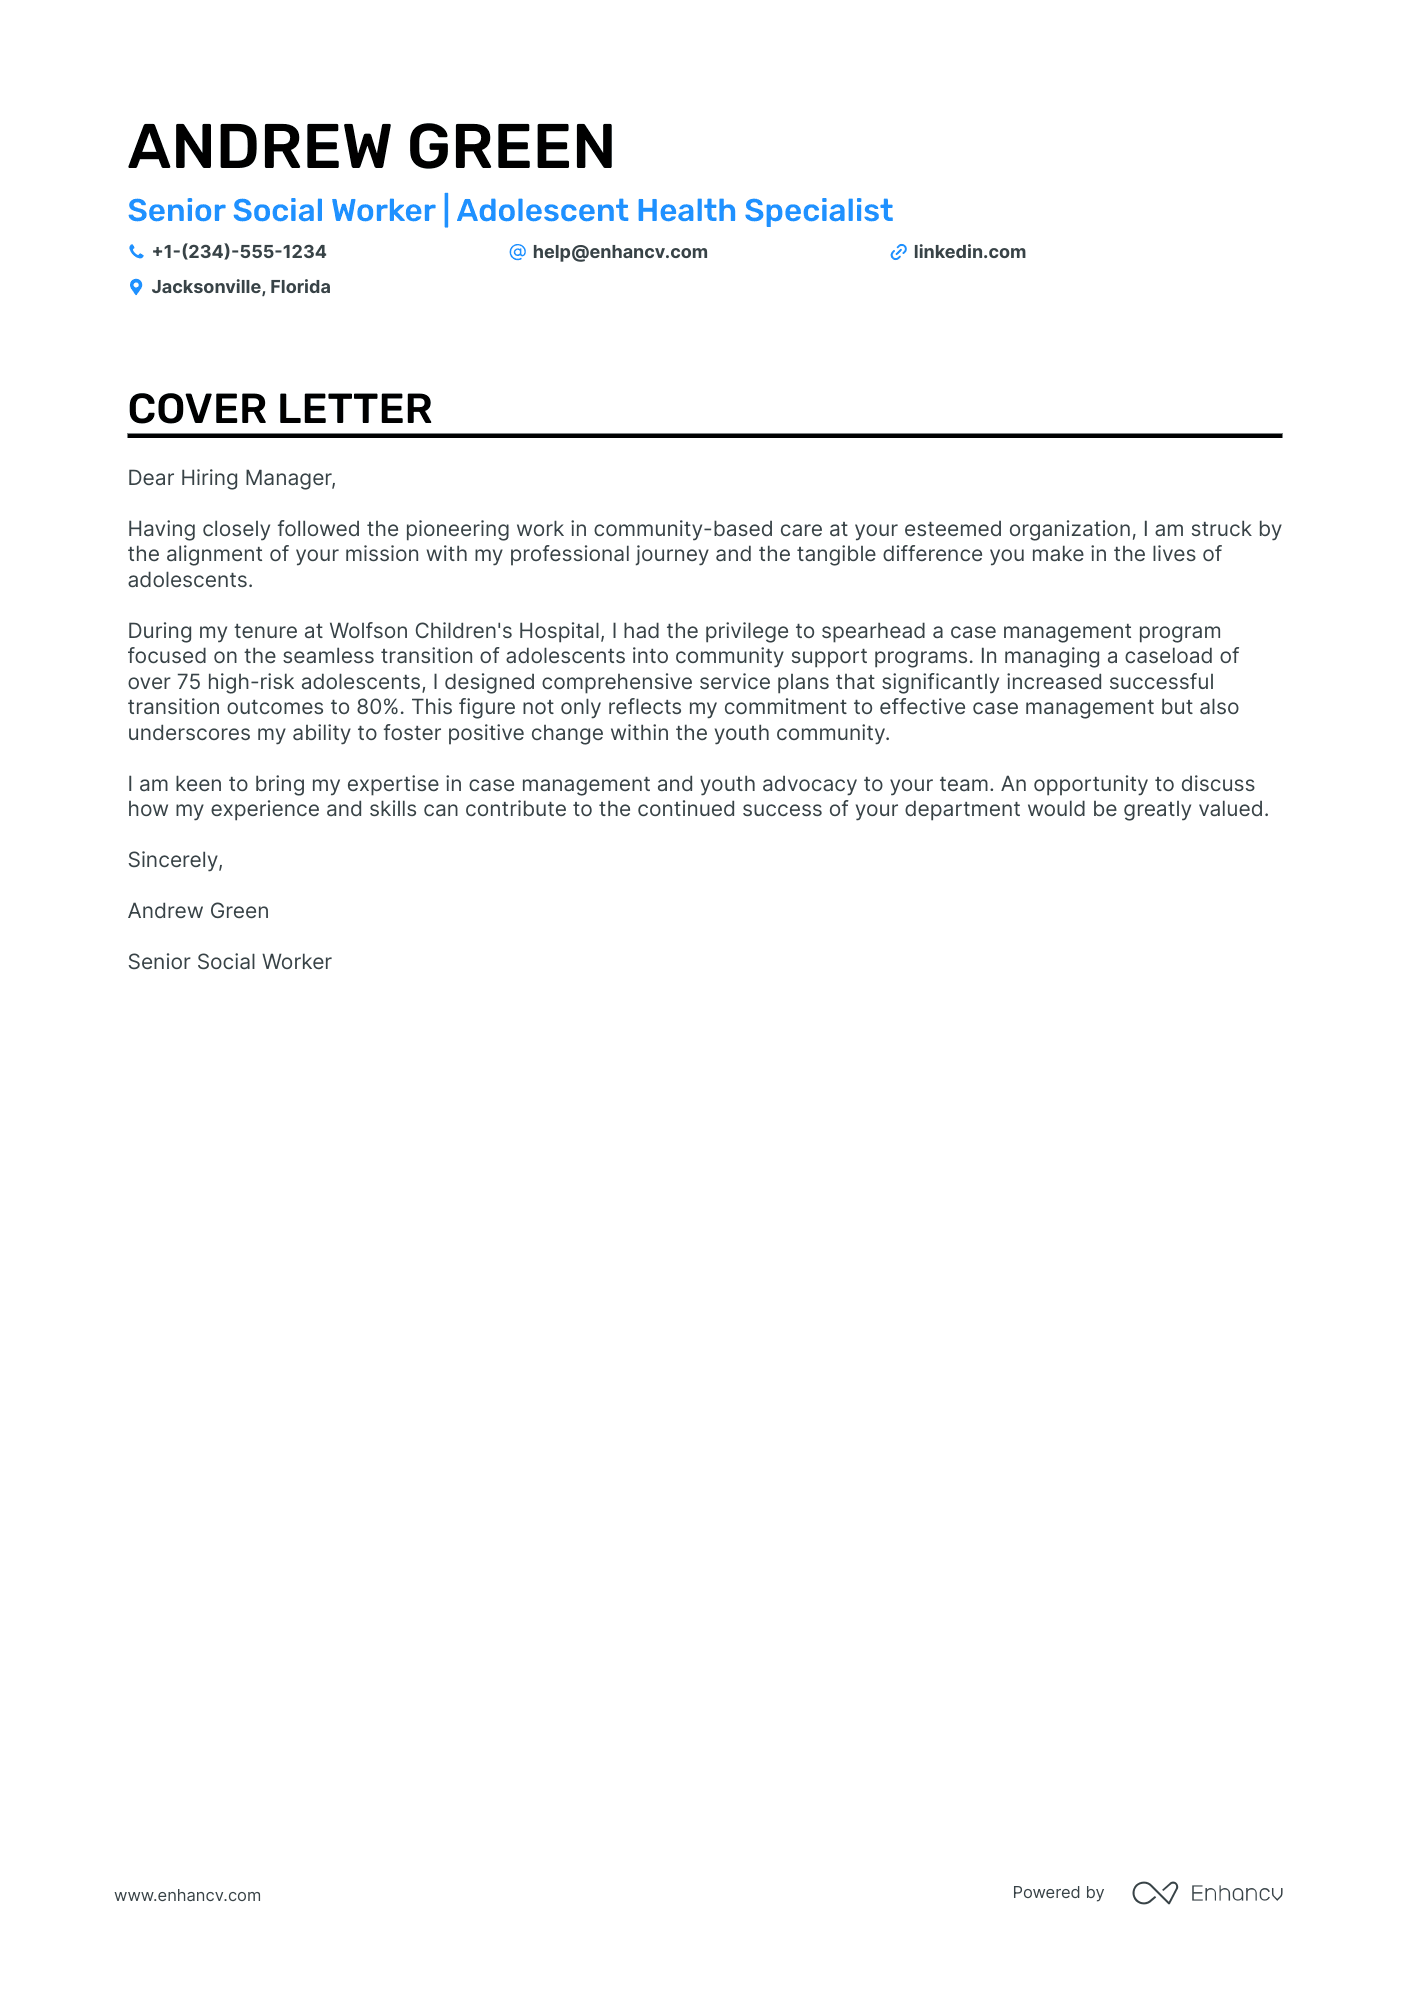 cover letter for social work position